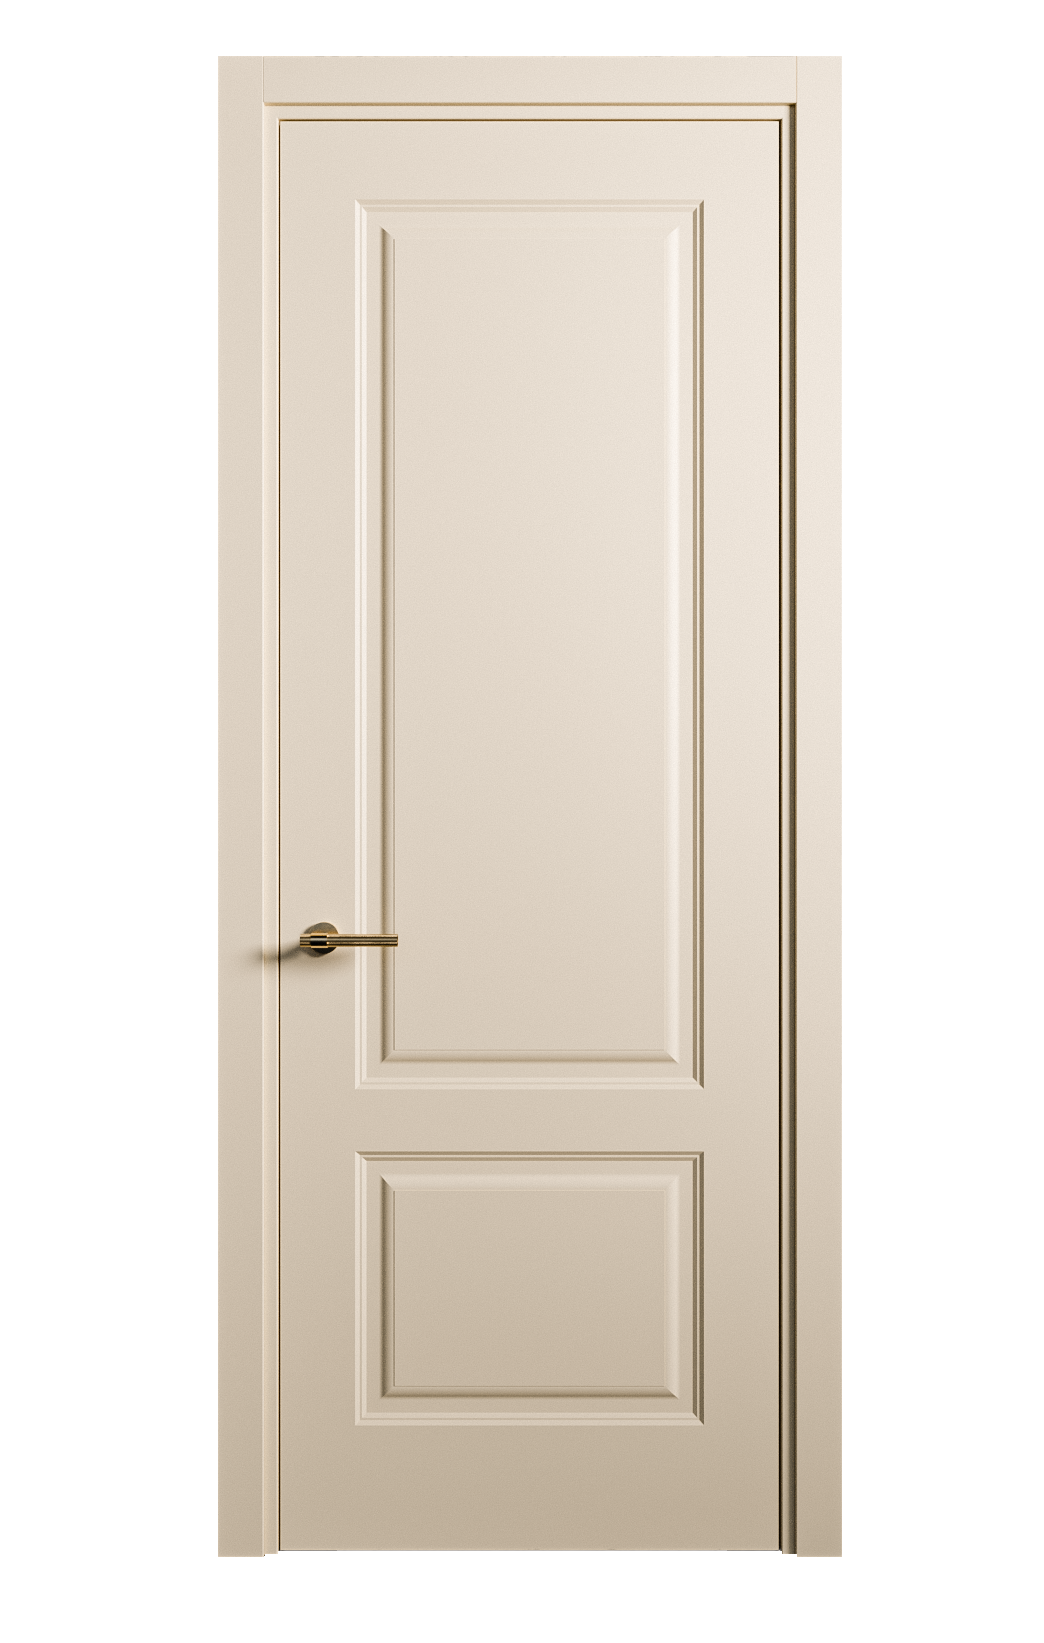 Межкомнатная дверь Вита-1 глухая эмаль ral 1015 26232